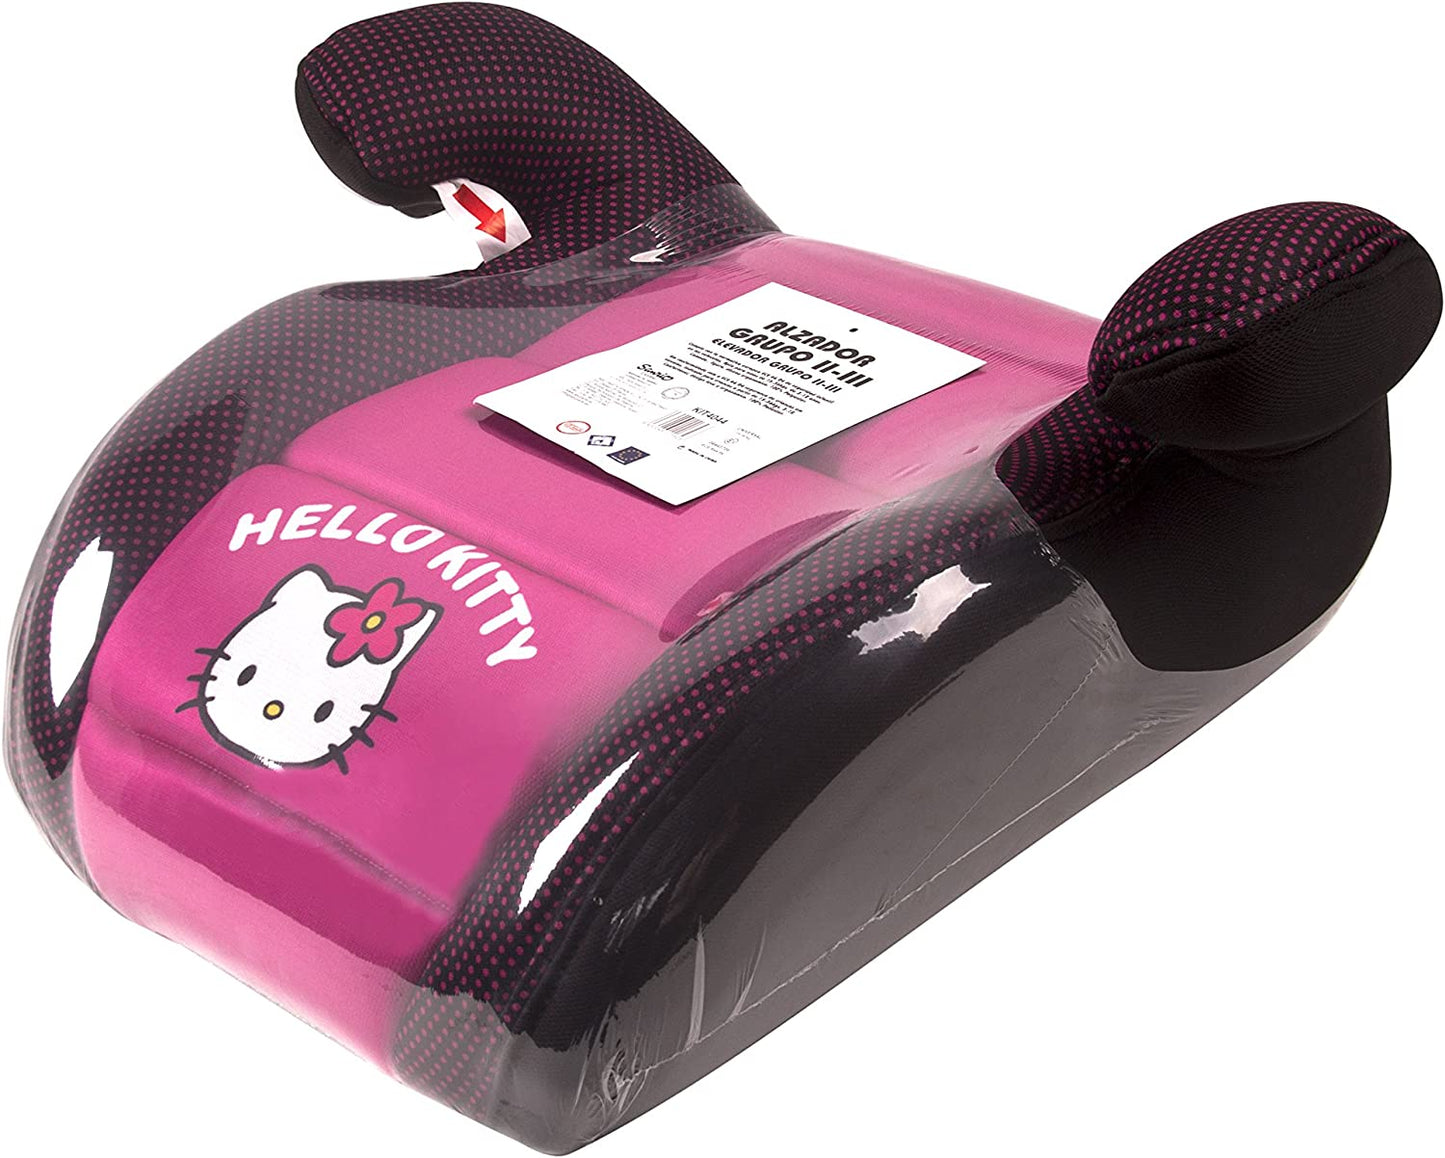 Hello Kitty - 4044 - Assento Elevado para Carro - Rosa